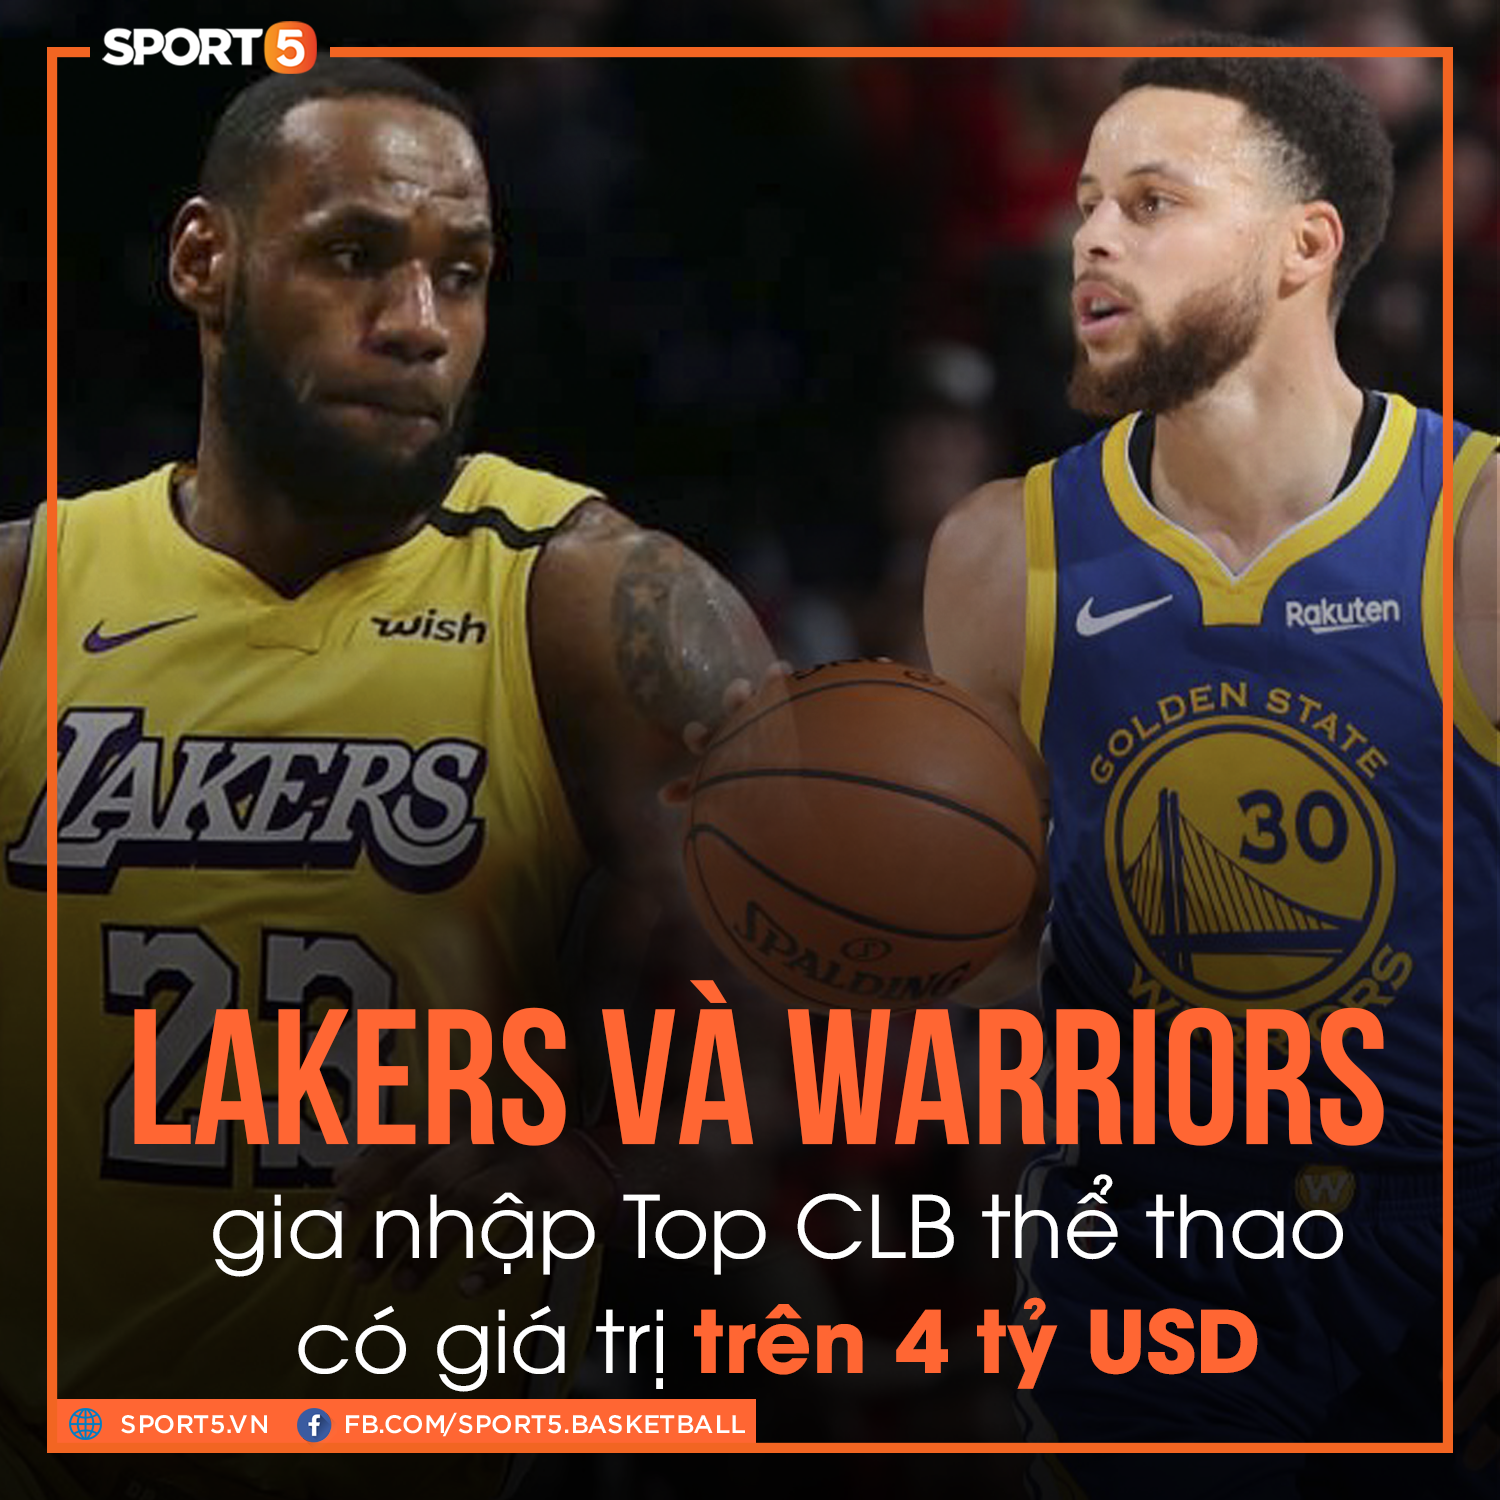 Giá trị thương hiệu tăng chóng mặt, Los Angeles Lakers và Golden State Warriors cán mốc 4 tỷ USD - Ảnh 1.